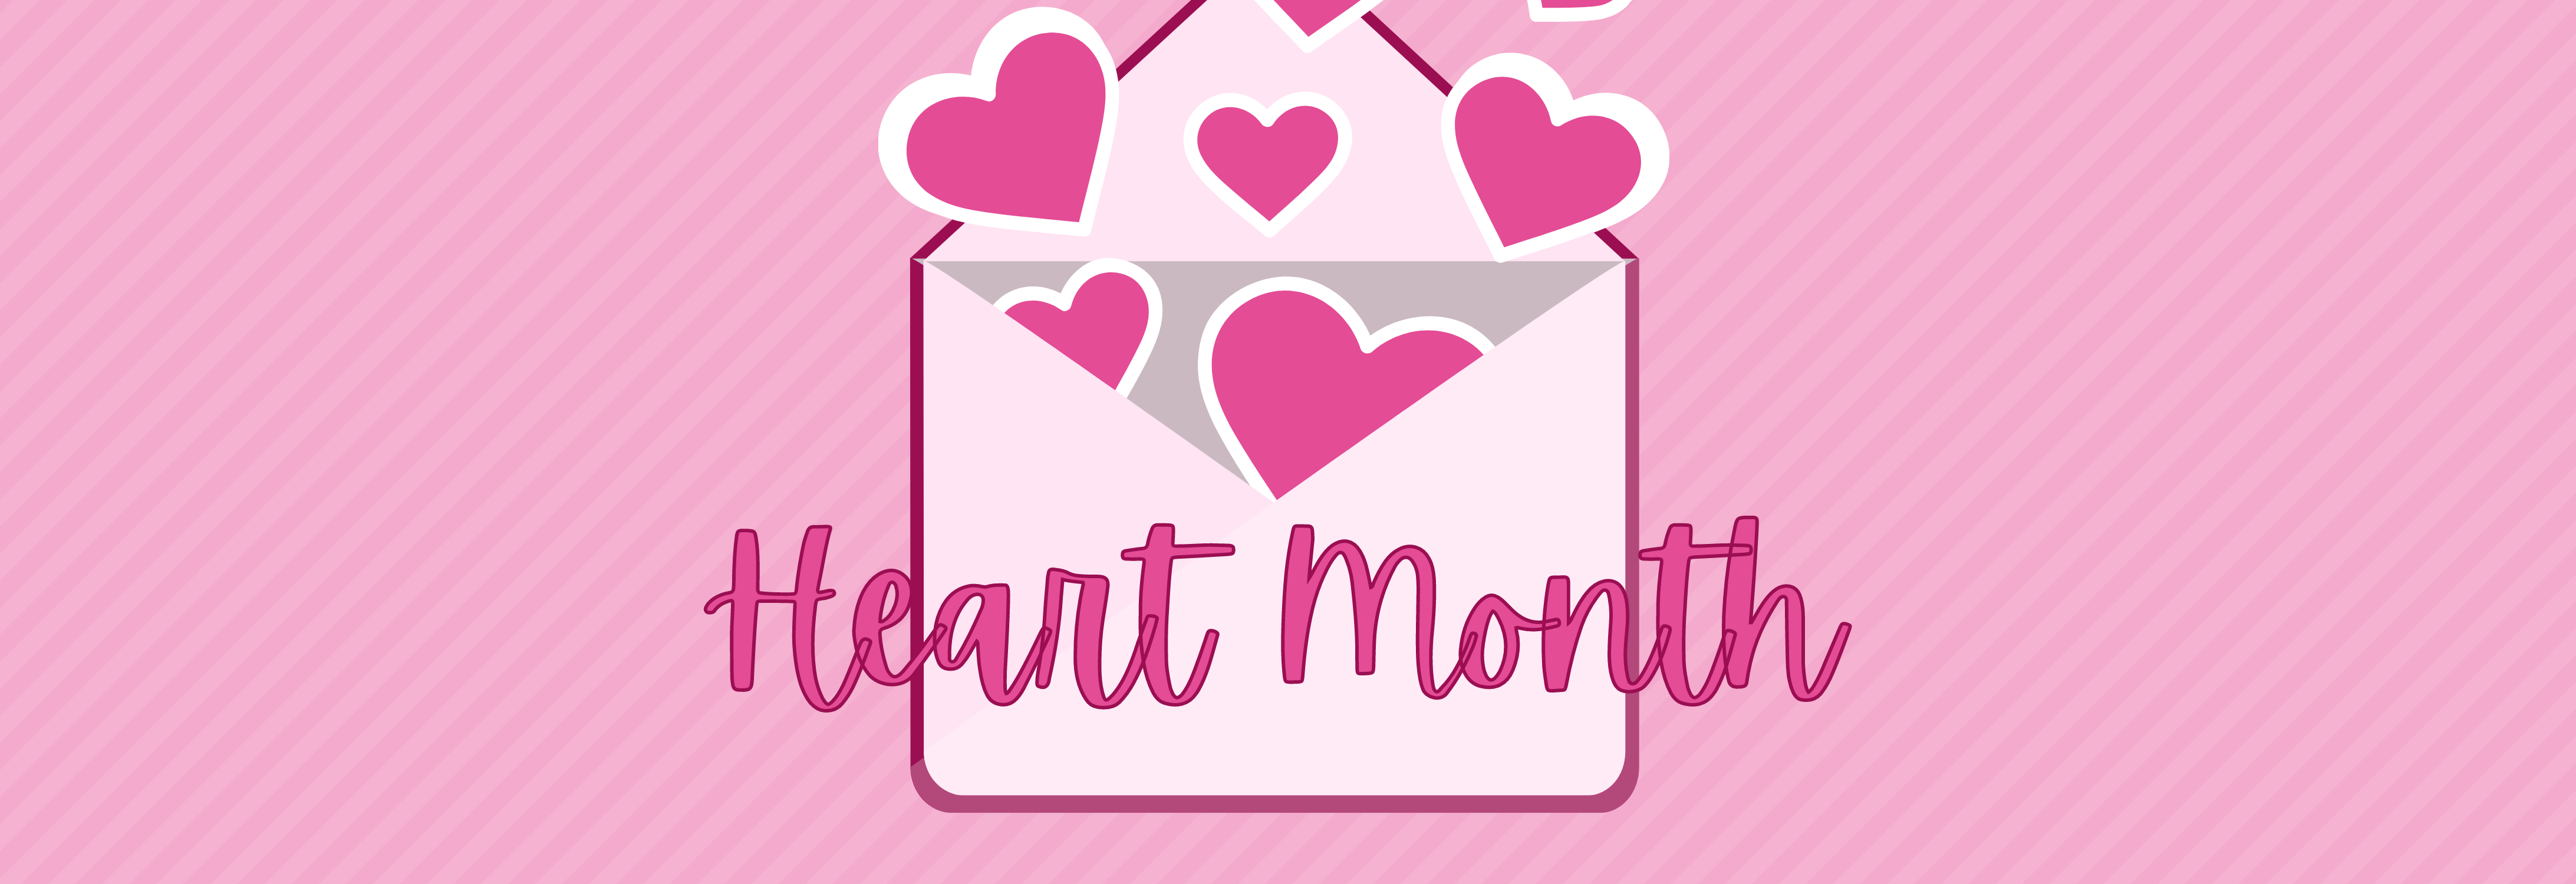 Heart Month blog